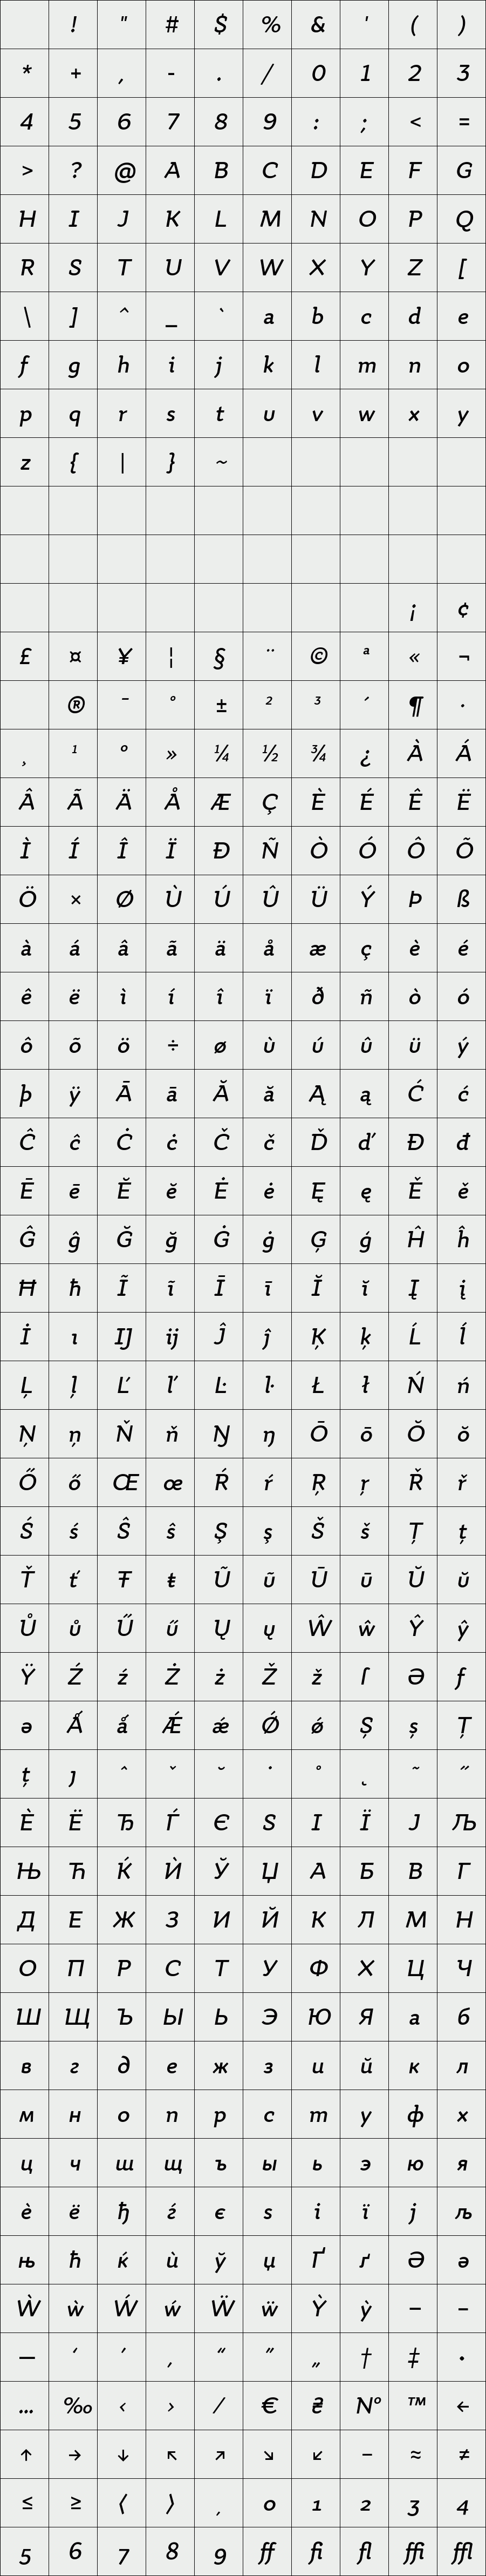 Quiza Pro SemiBold Italic